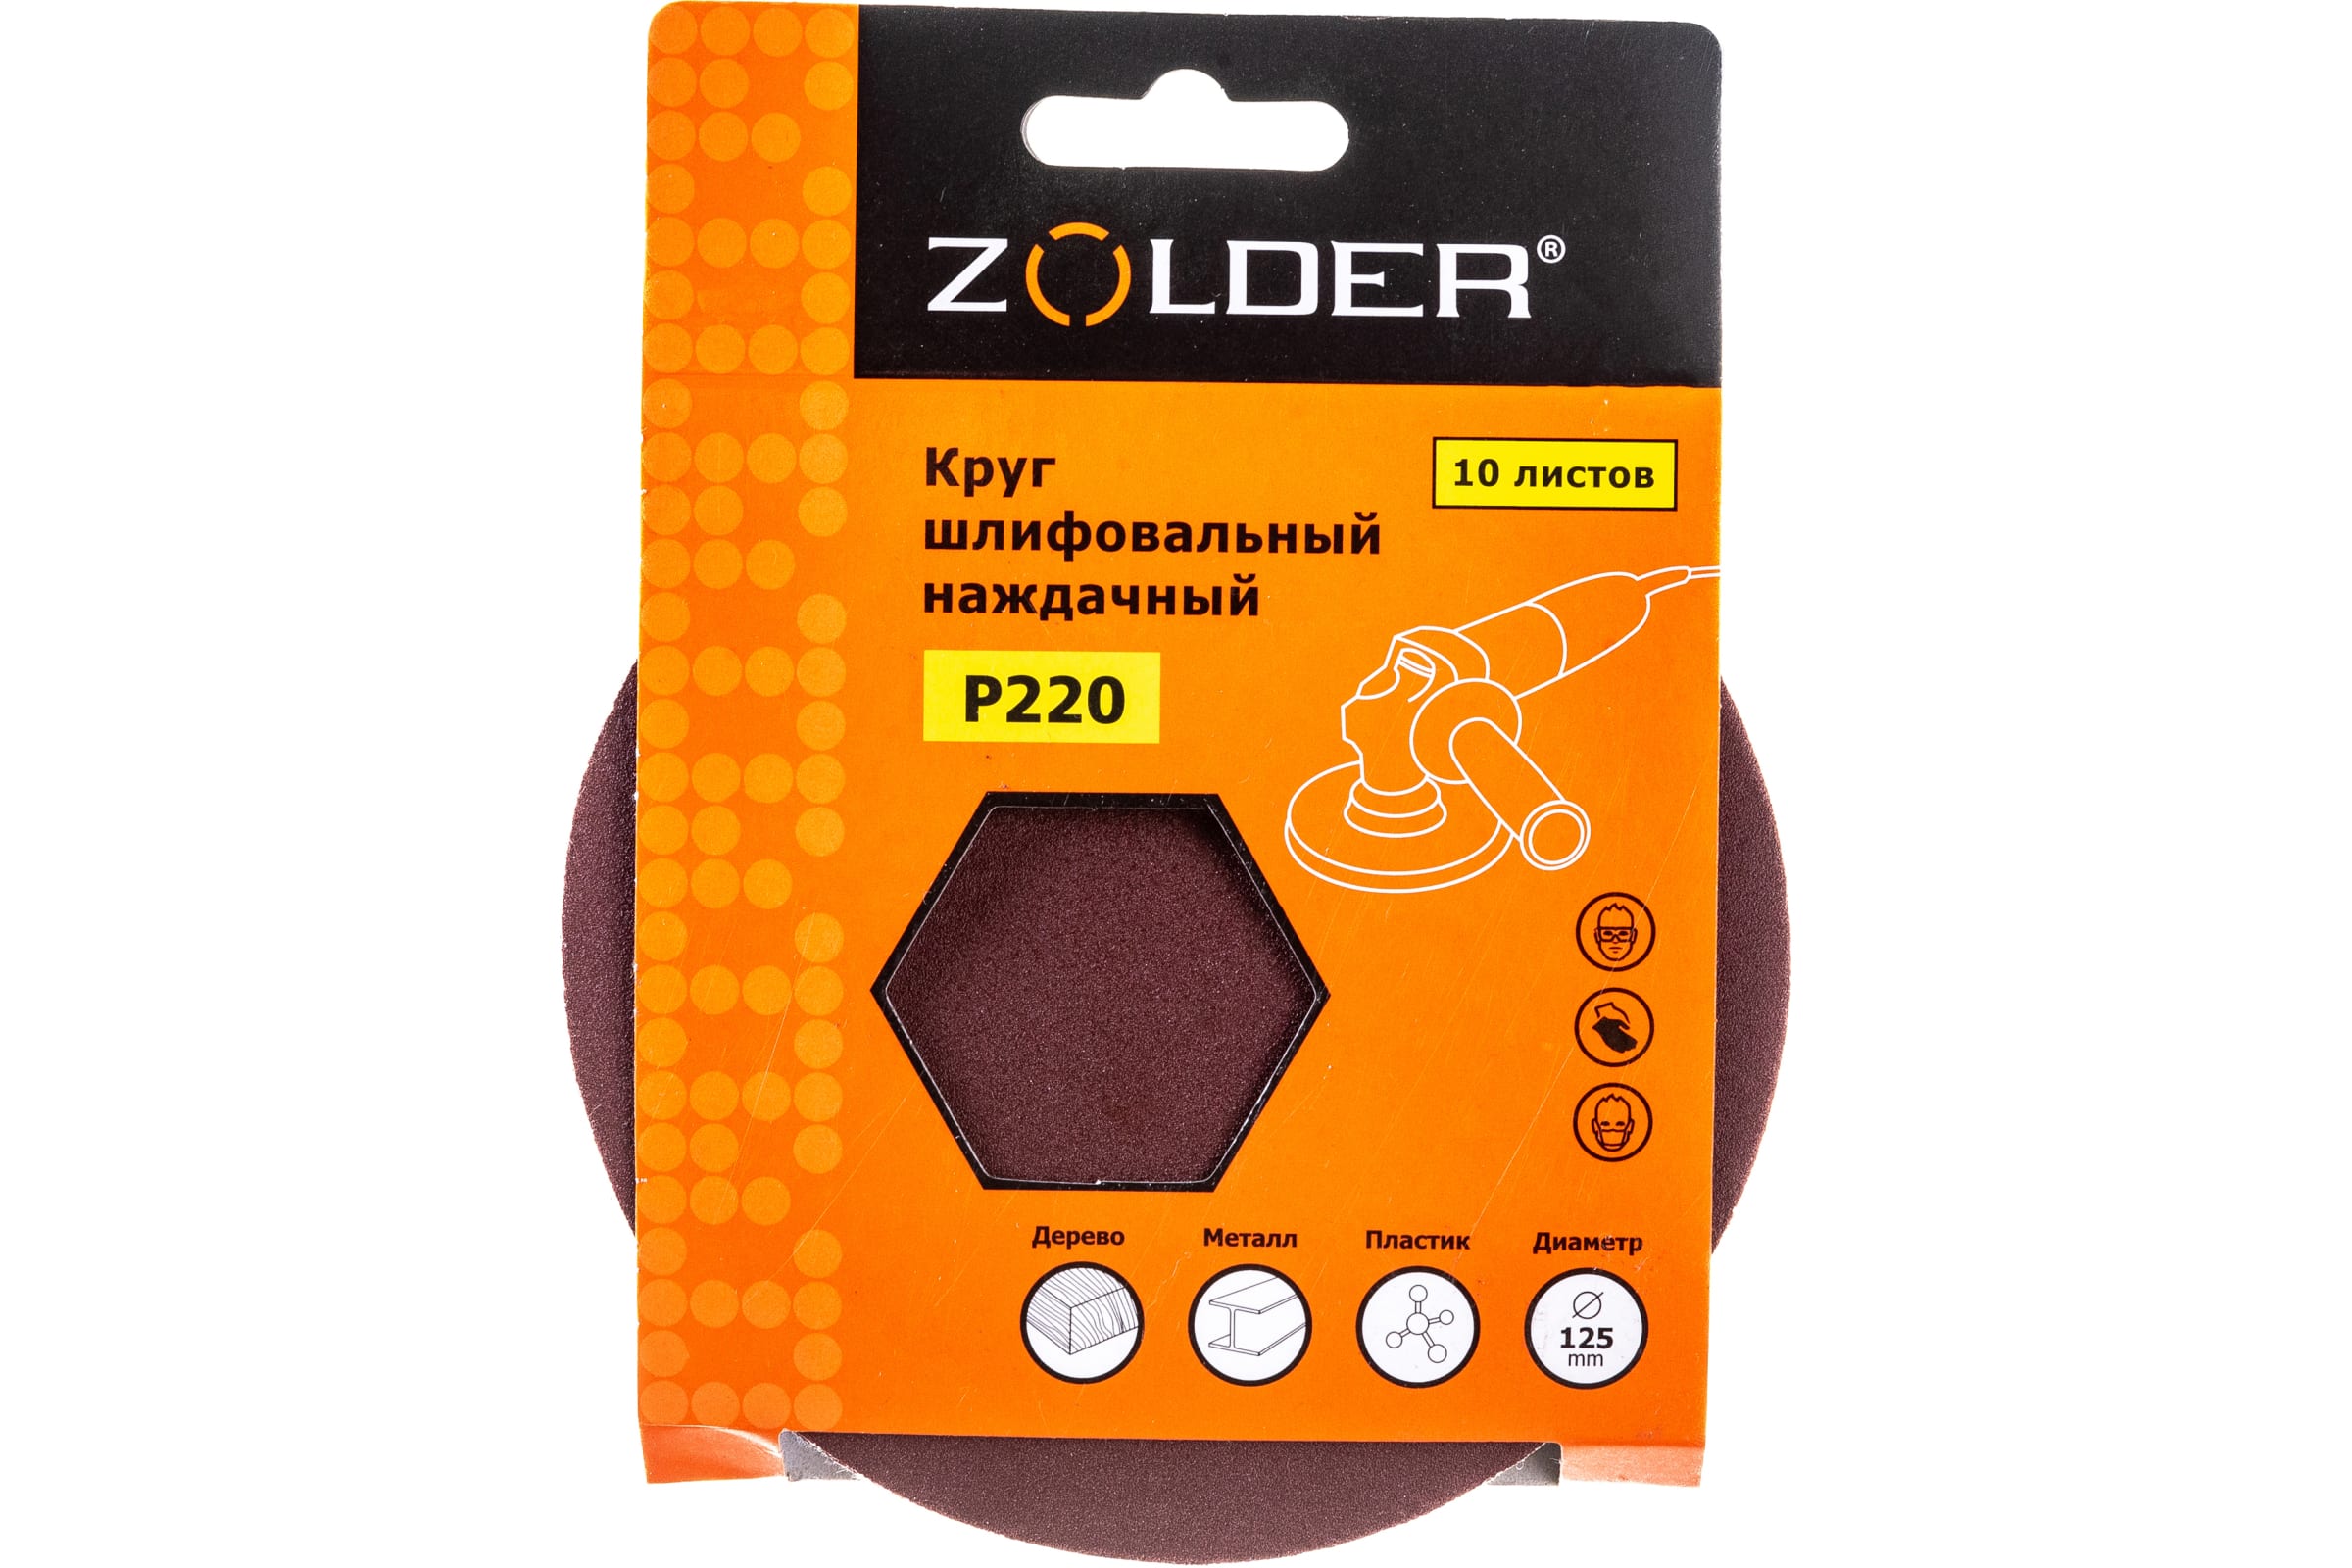 ZOLDER Круги шлифовальные наждачные 10шт/ P220, 125 мм / Z-108-220